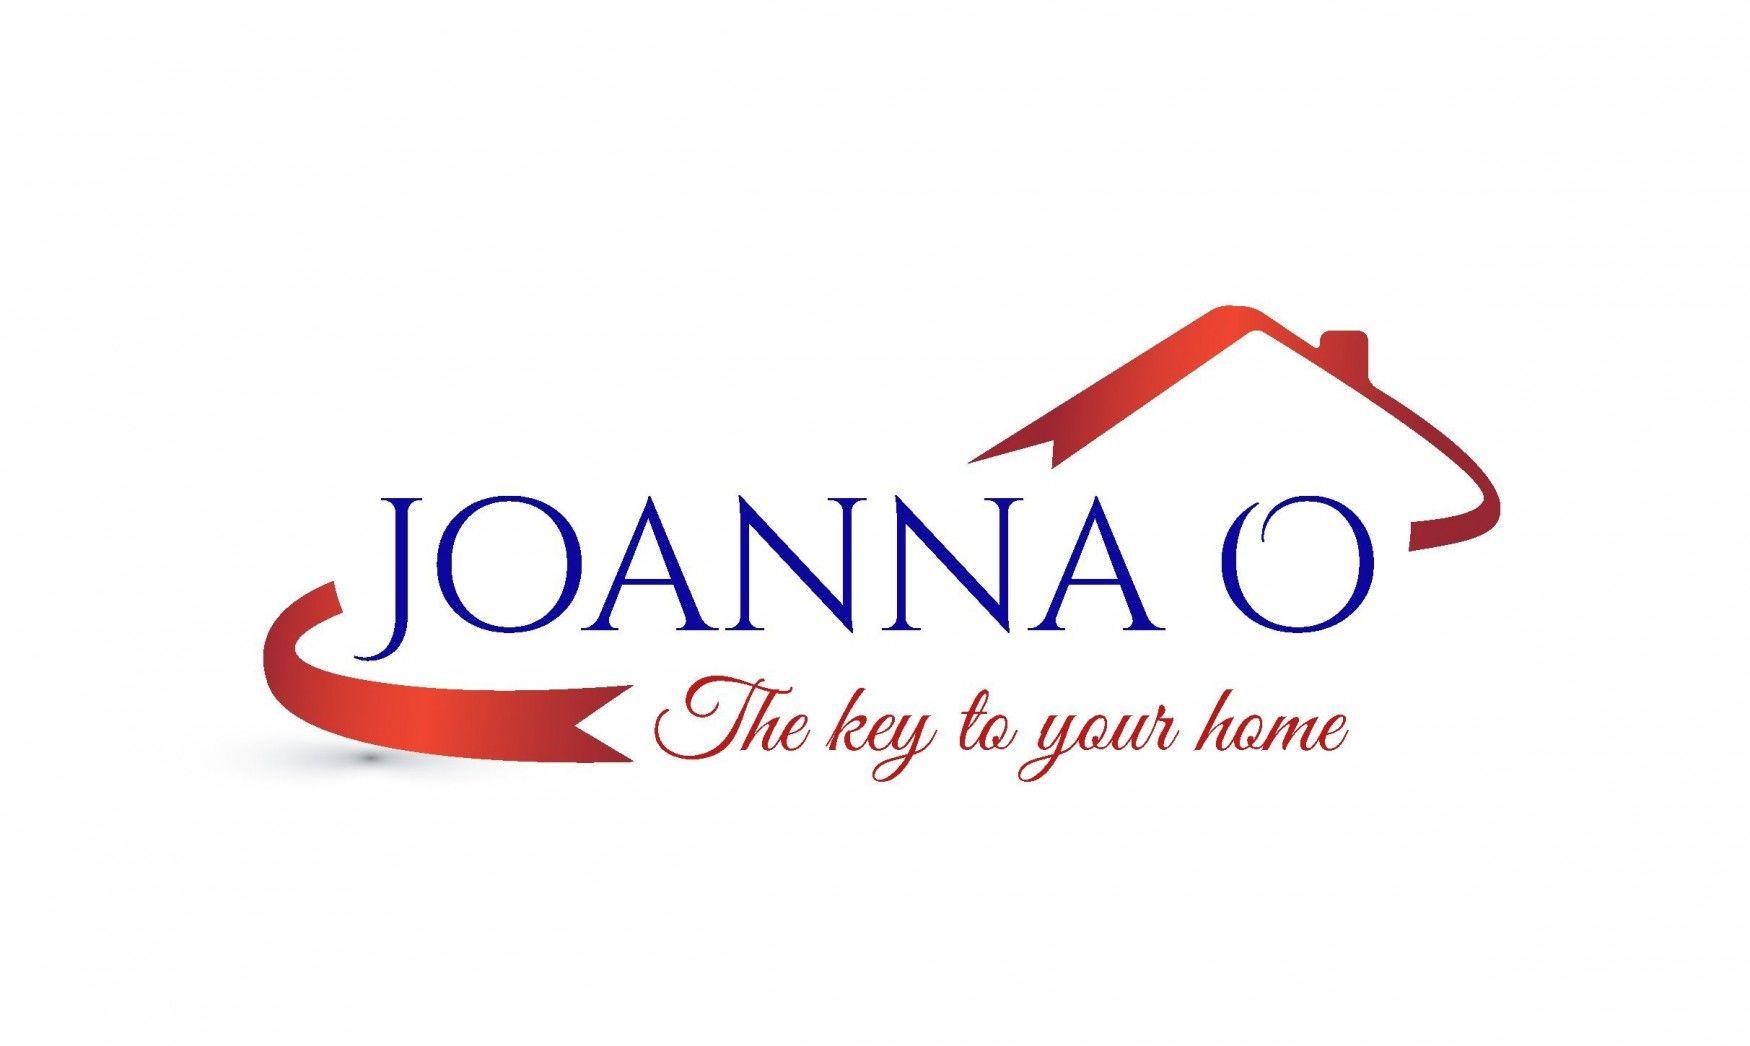 Joanna Logo - Joanna Ouderkirk - Free Logo Maker | Design Free Logo Online | Logo ...